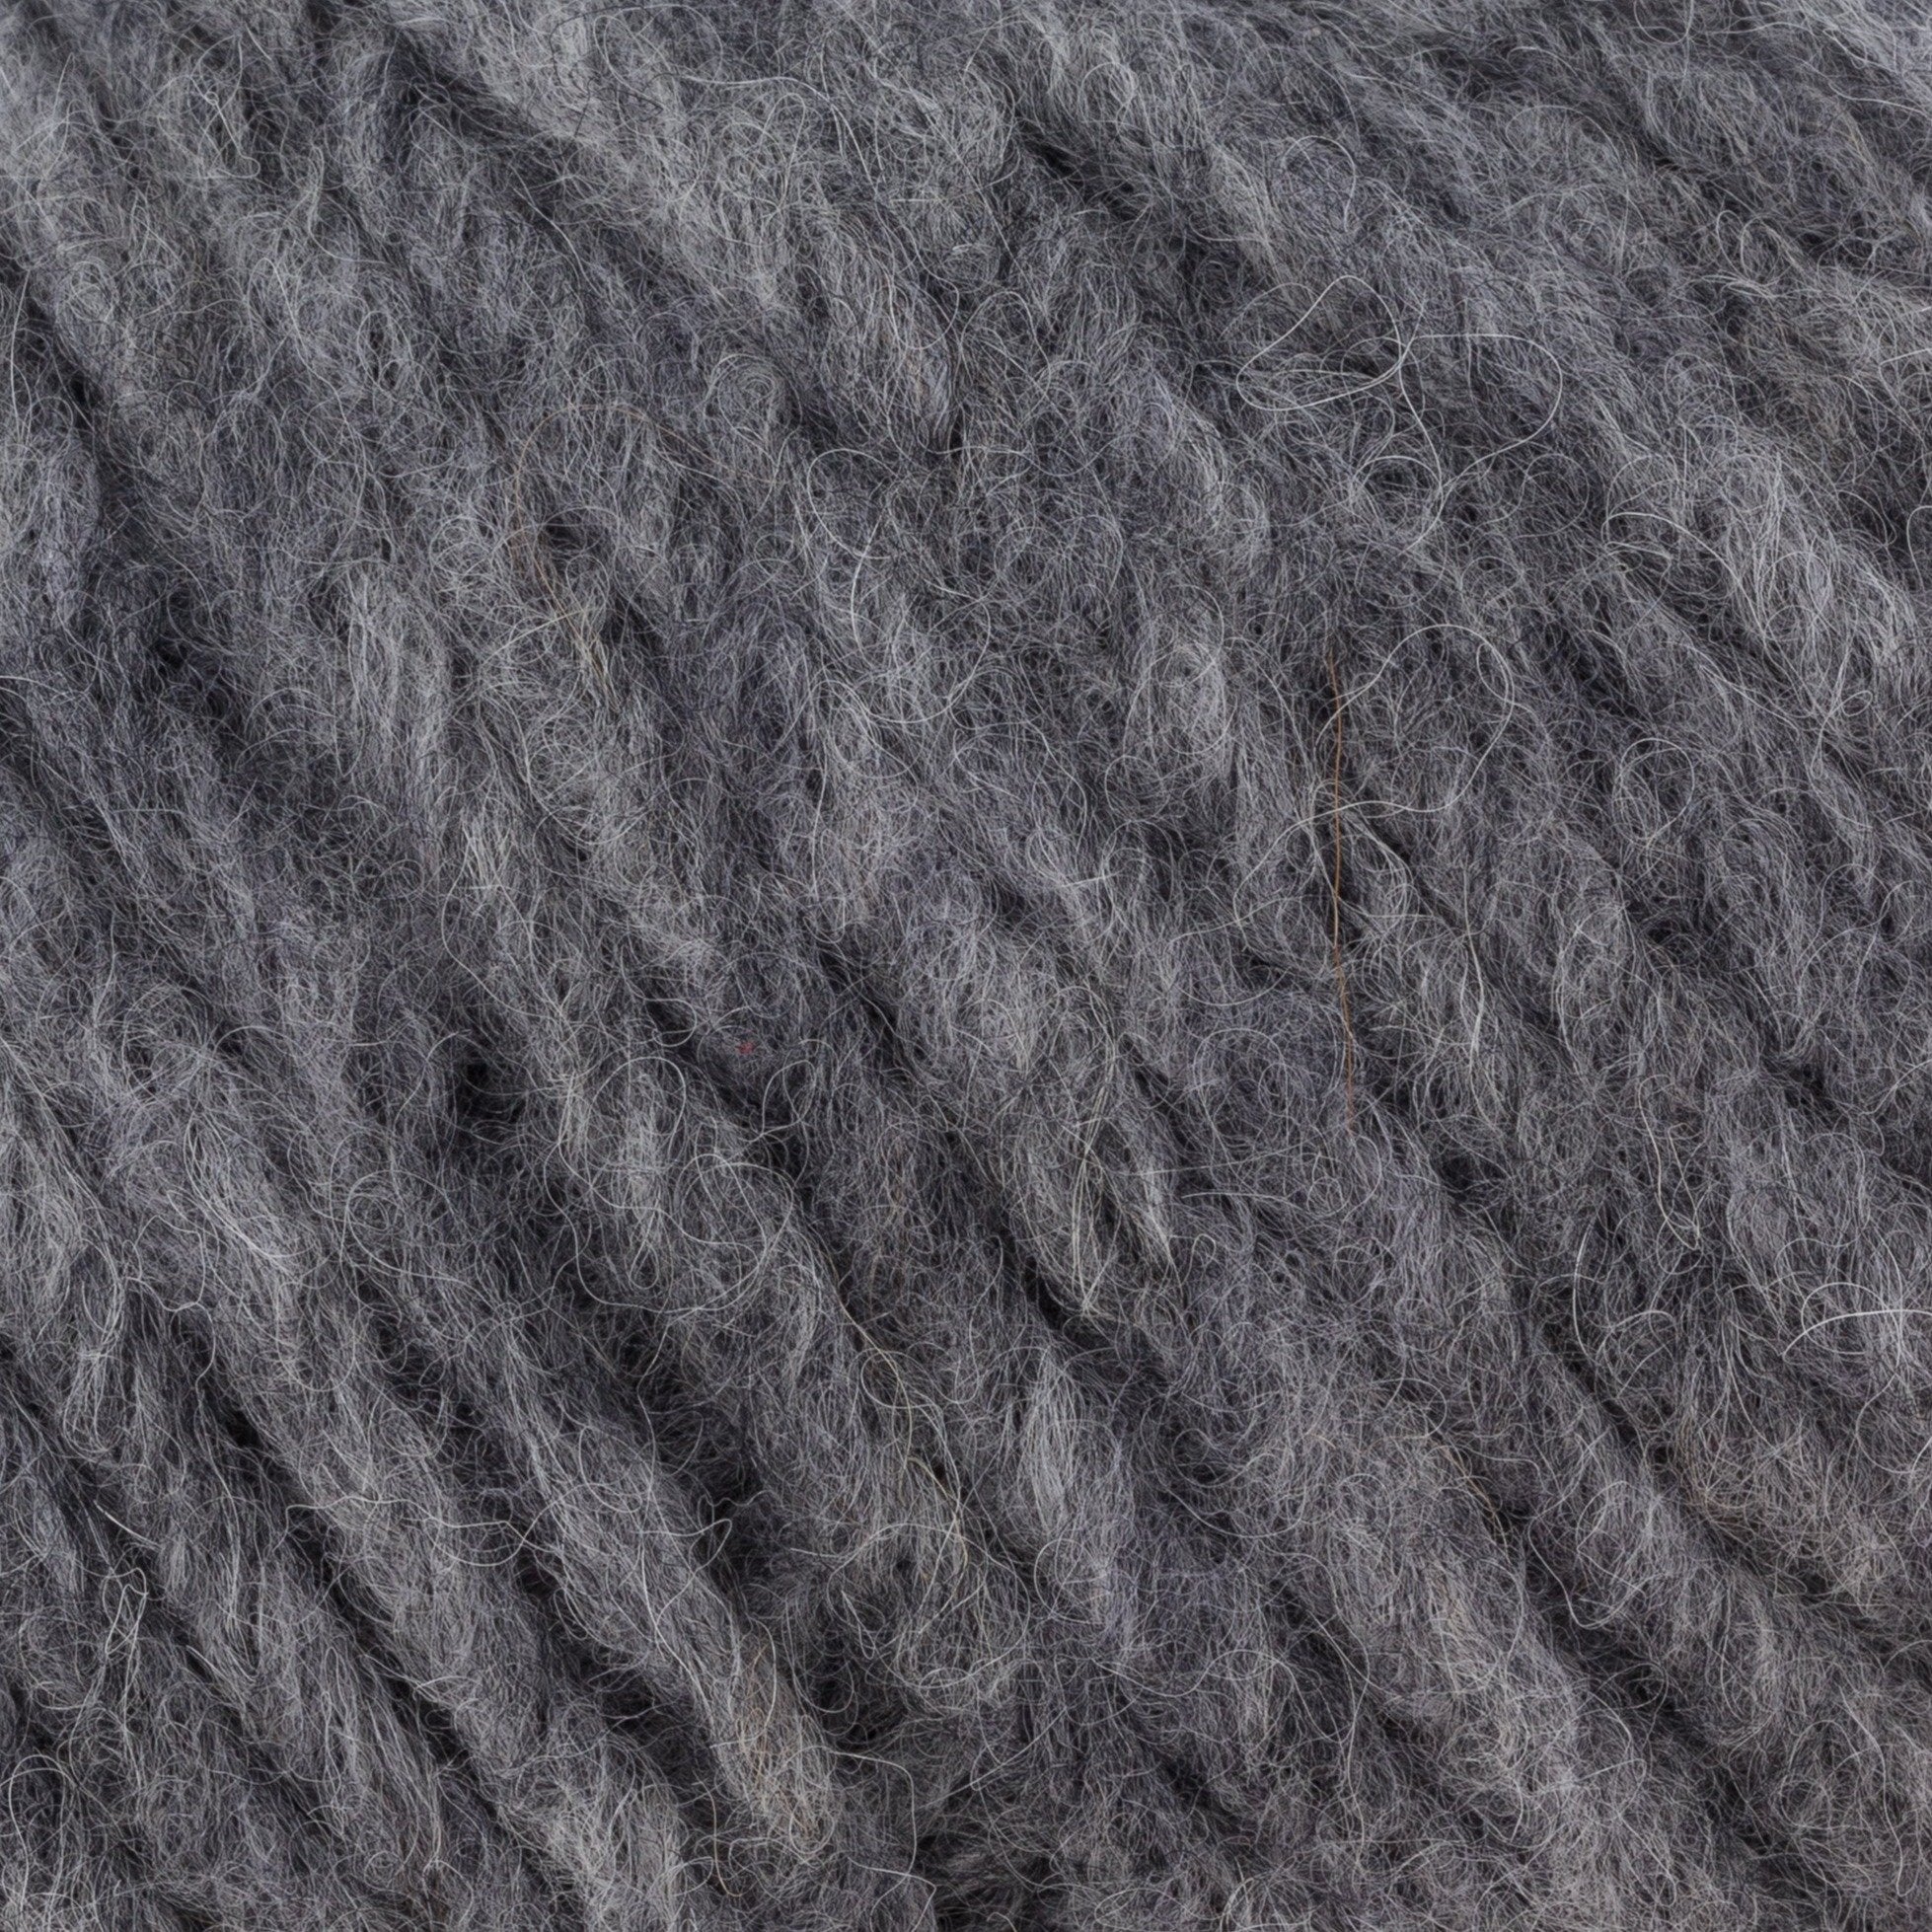 Rowan Brushed Fleece - End of Dye Lot